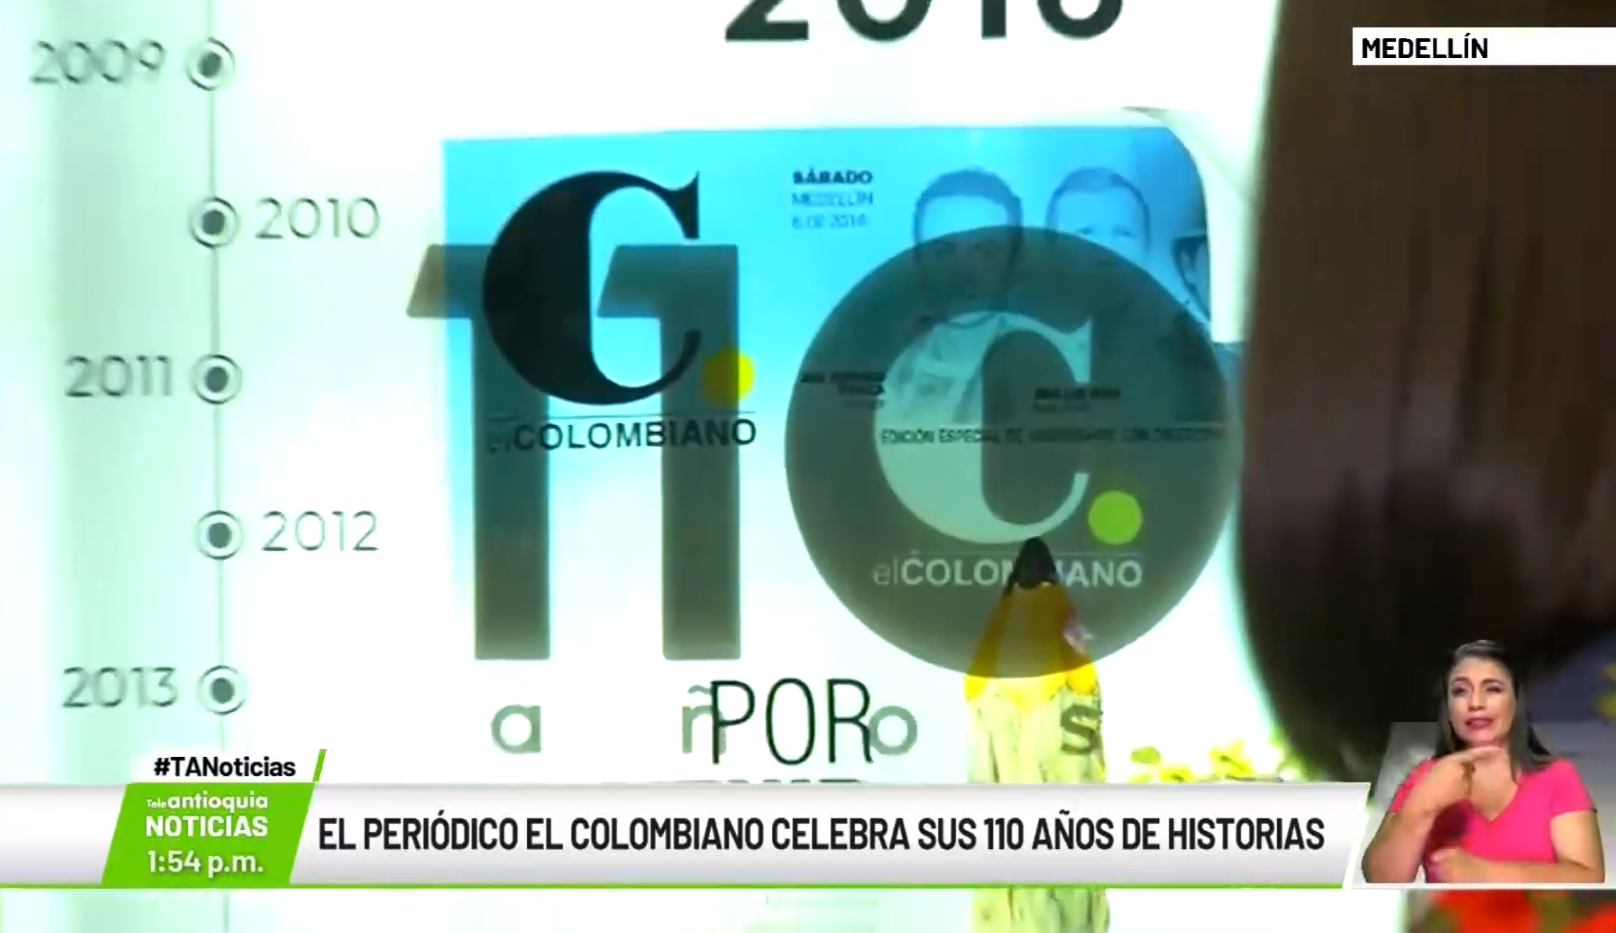 El periódico El colombiano celebra sus 110 años de historias